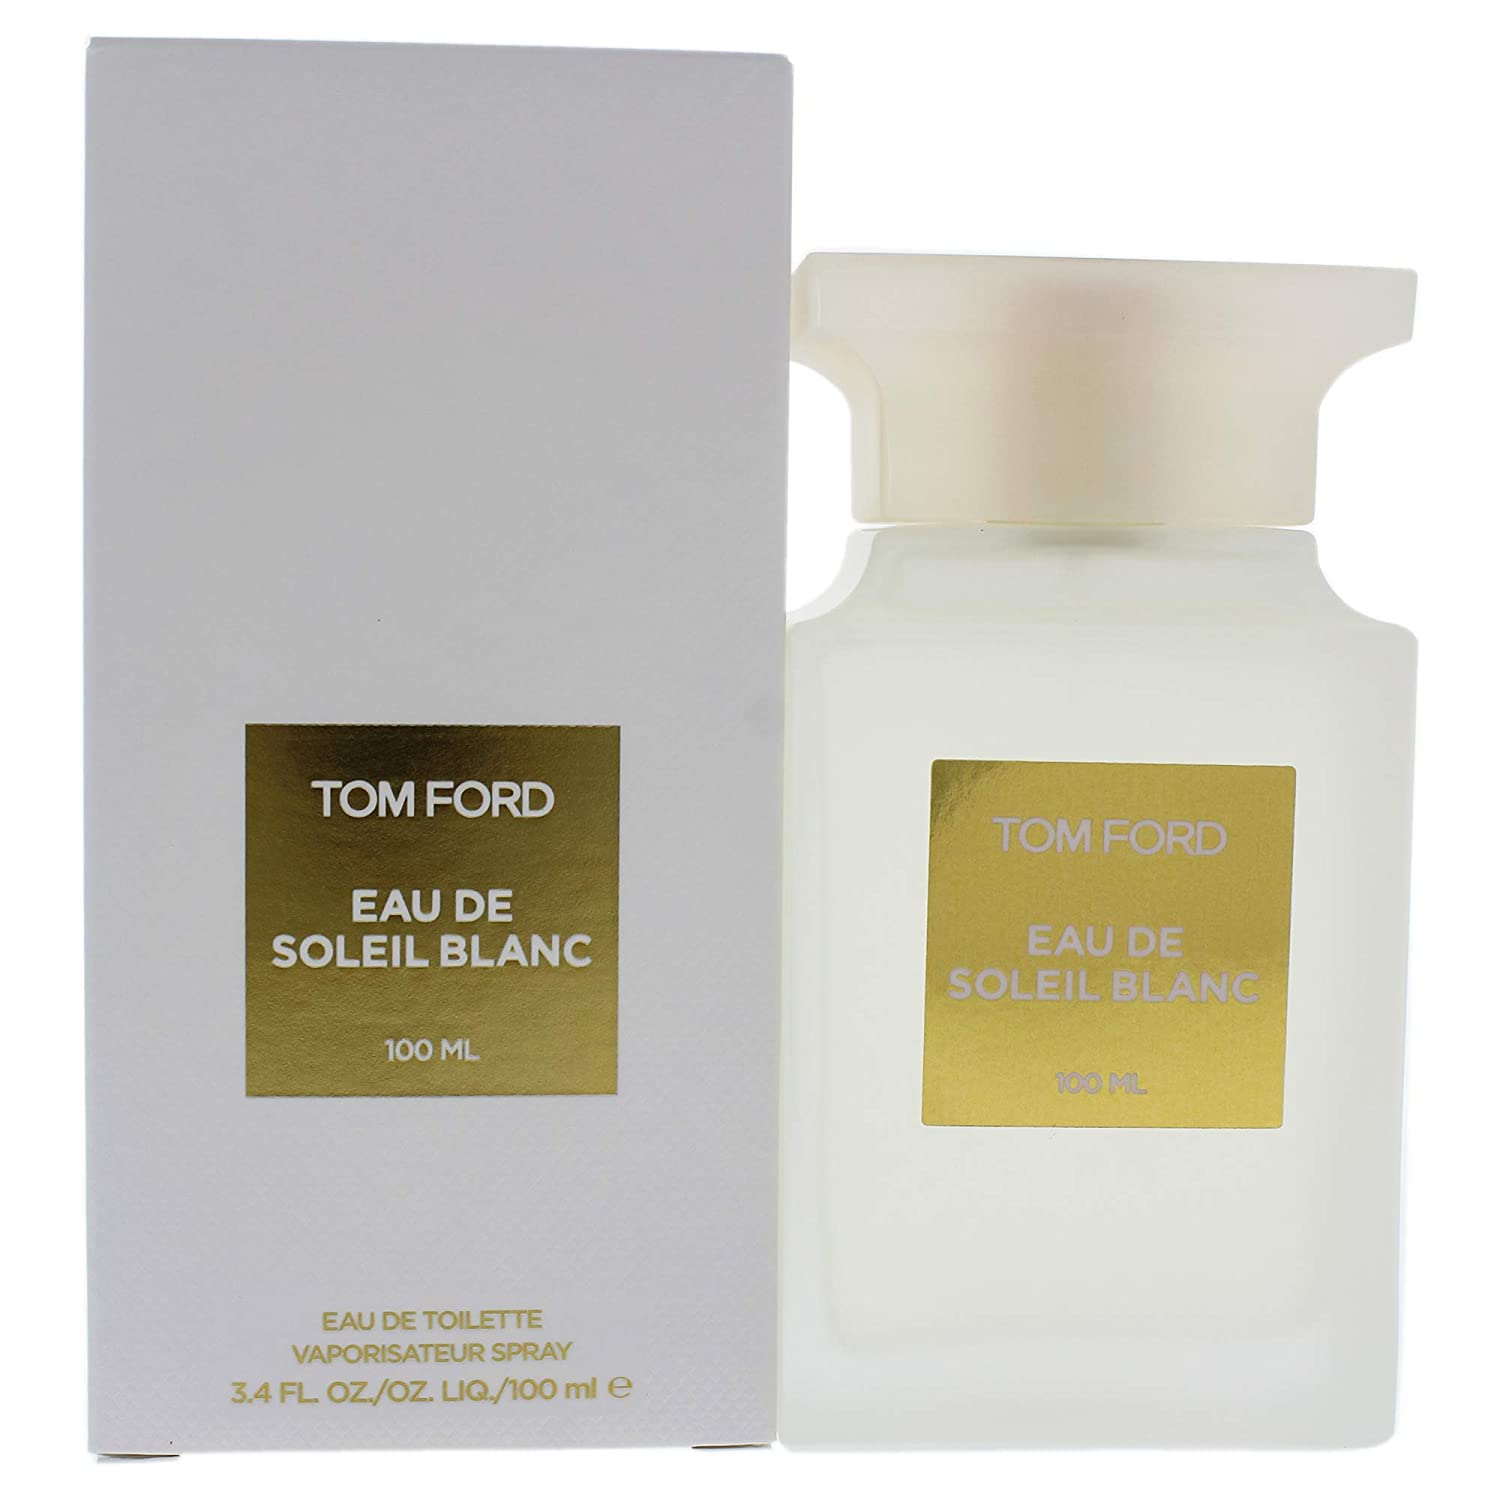 TOM FORD: Tom Ford Eau De Soleil Blanc 